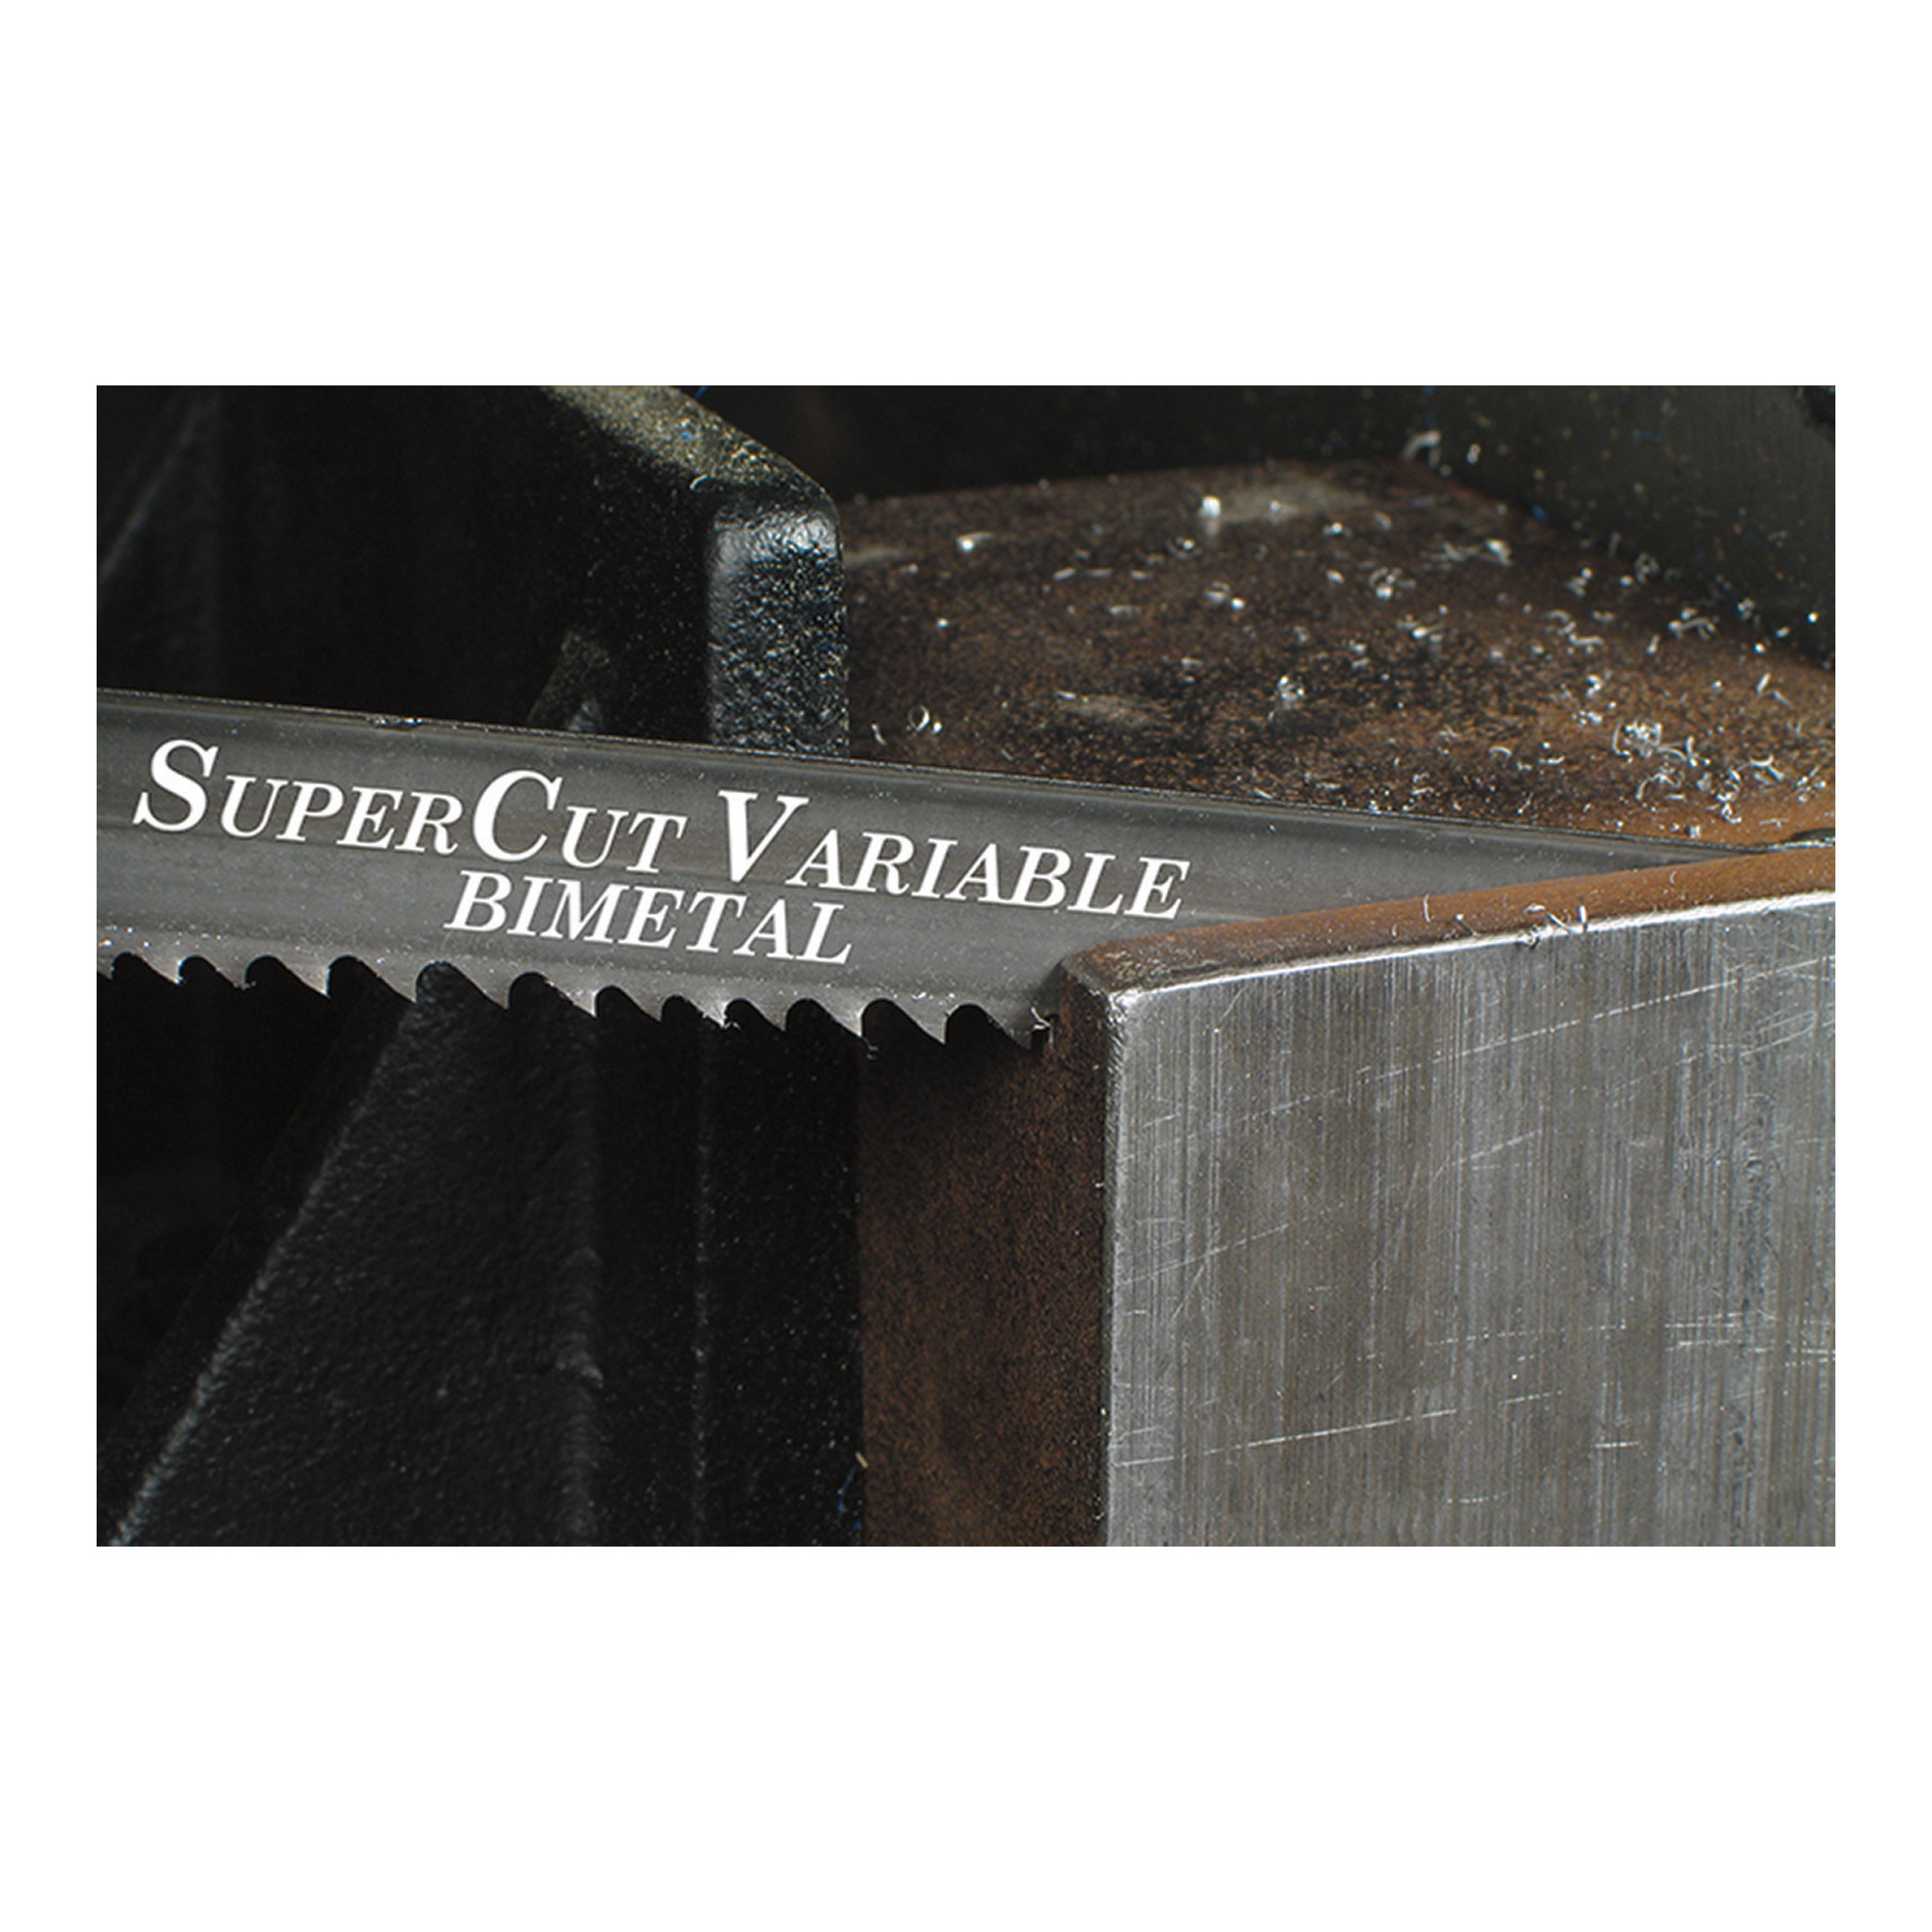 SuperCut Bi-Metal Replacement Band Saw Blade — 93Inch L x 3/4Inch W, 8/12 TPI -  0 90101 44225 0